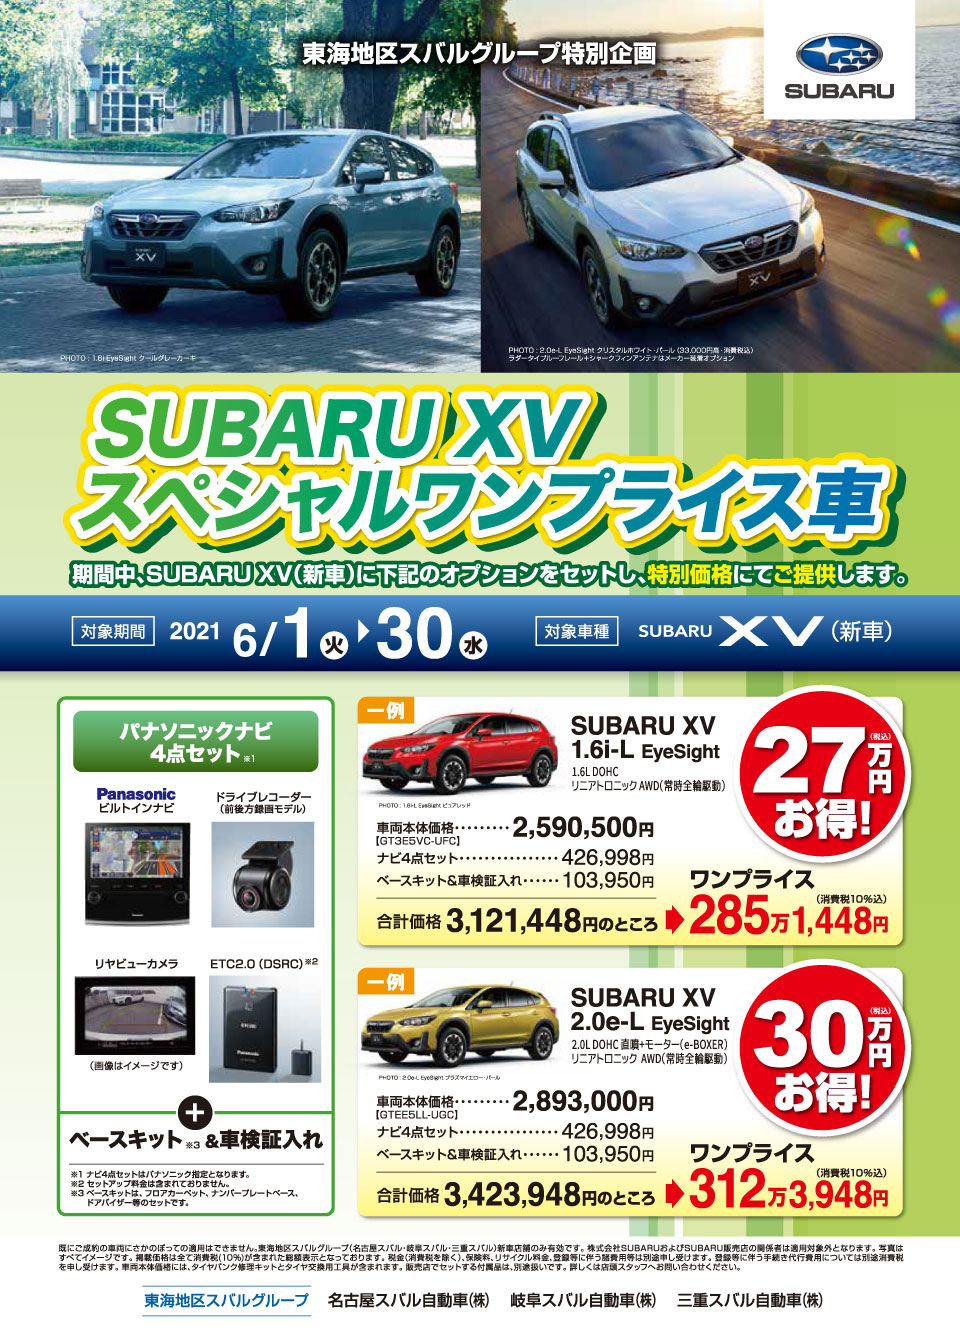 SUBARU XV スペシャルワンプライス車